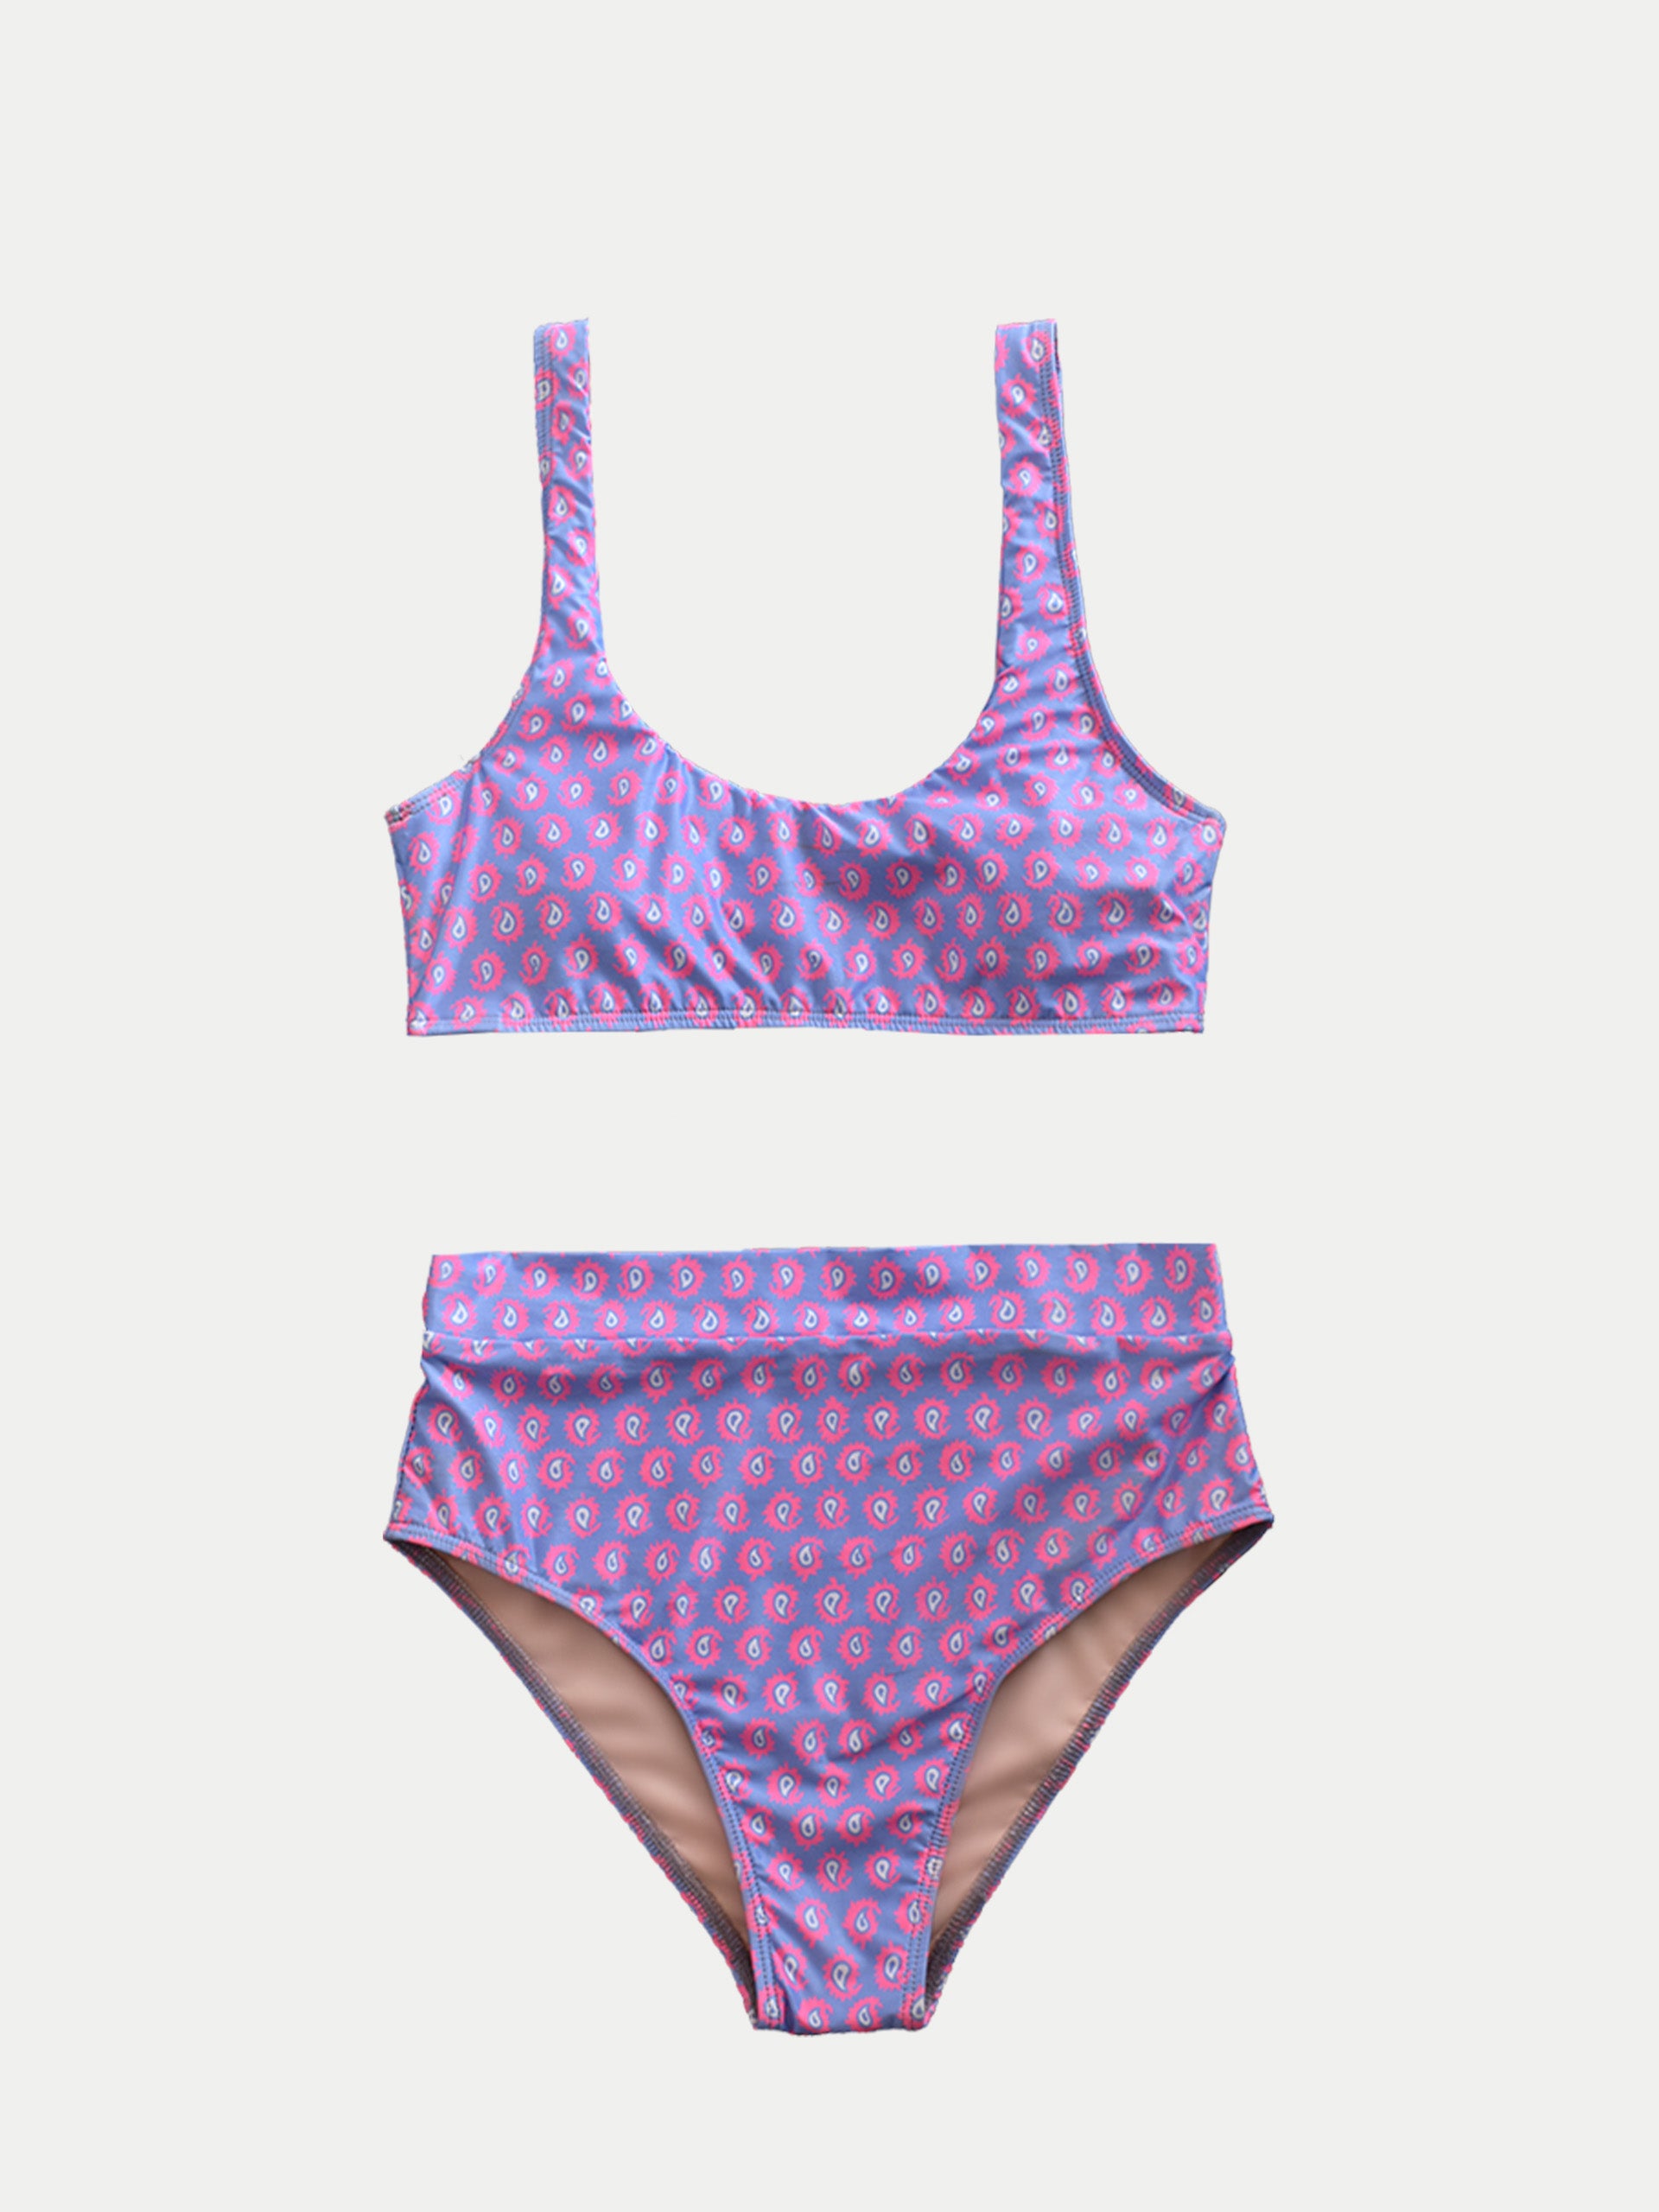 ‘Electric Pink’ Women Swimwear by 98 Coast Av.